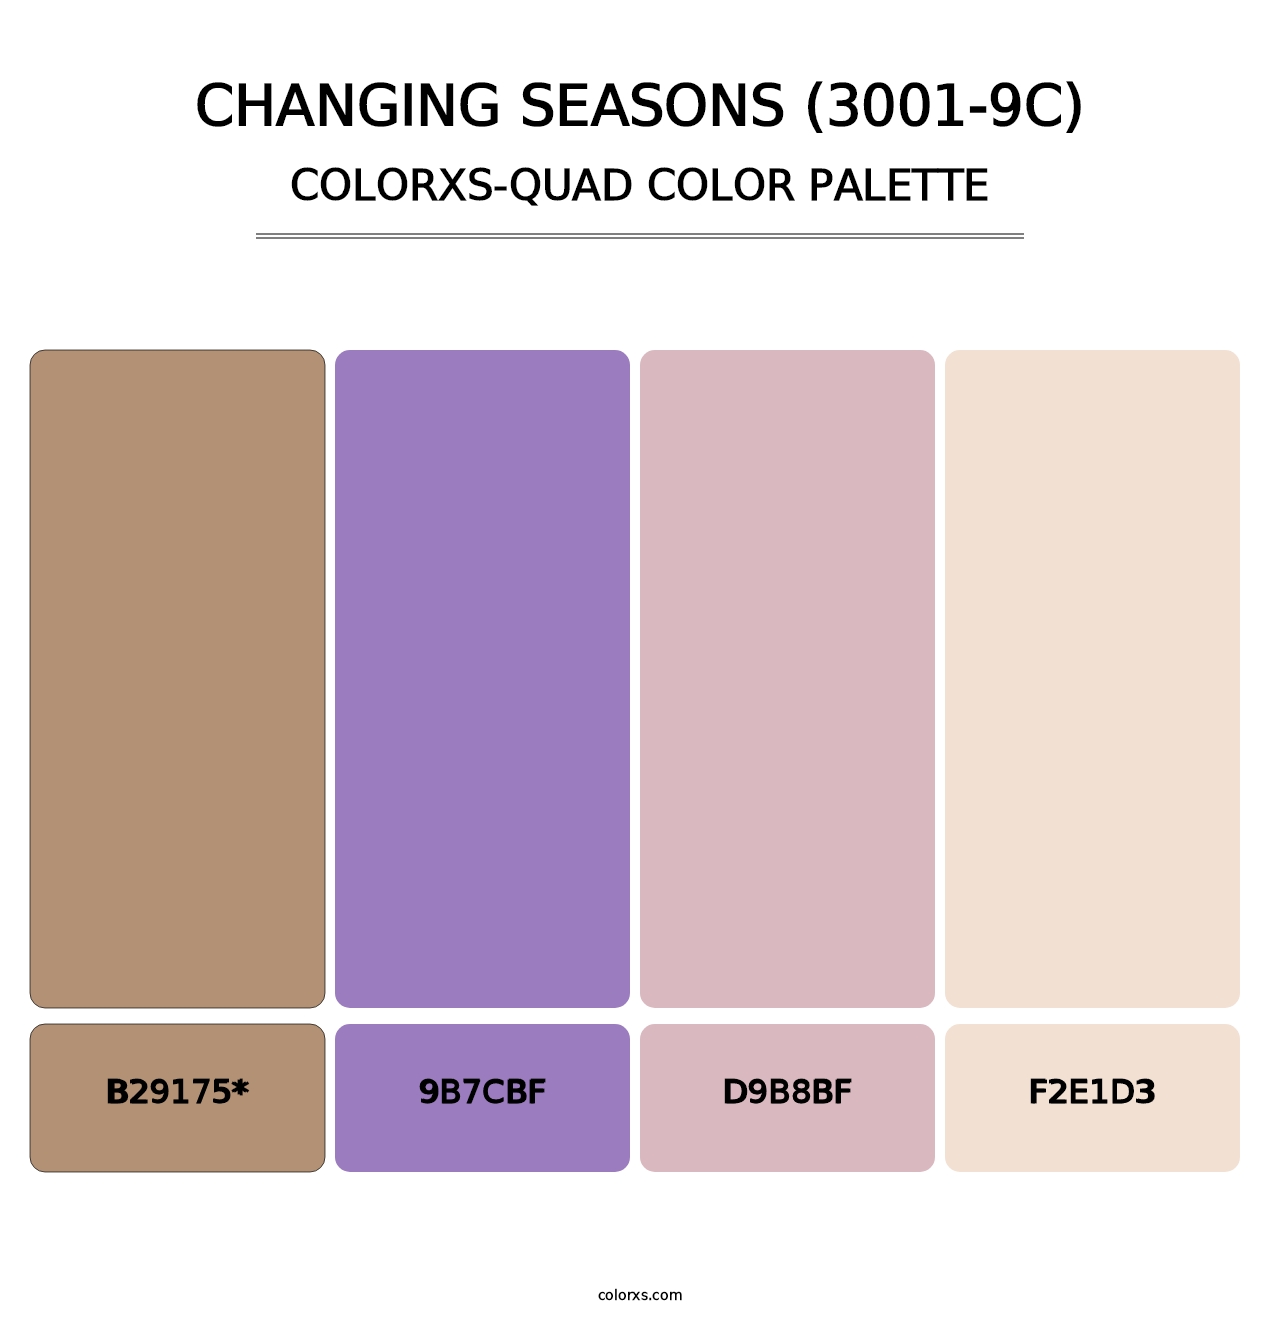 Changing Seasons (3001-9C) - Colorxs Quad Palette